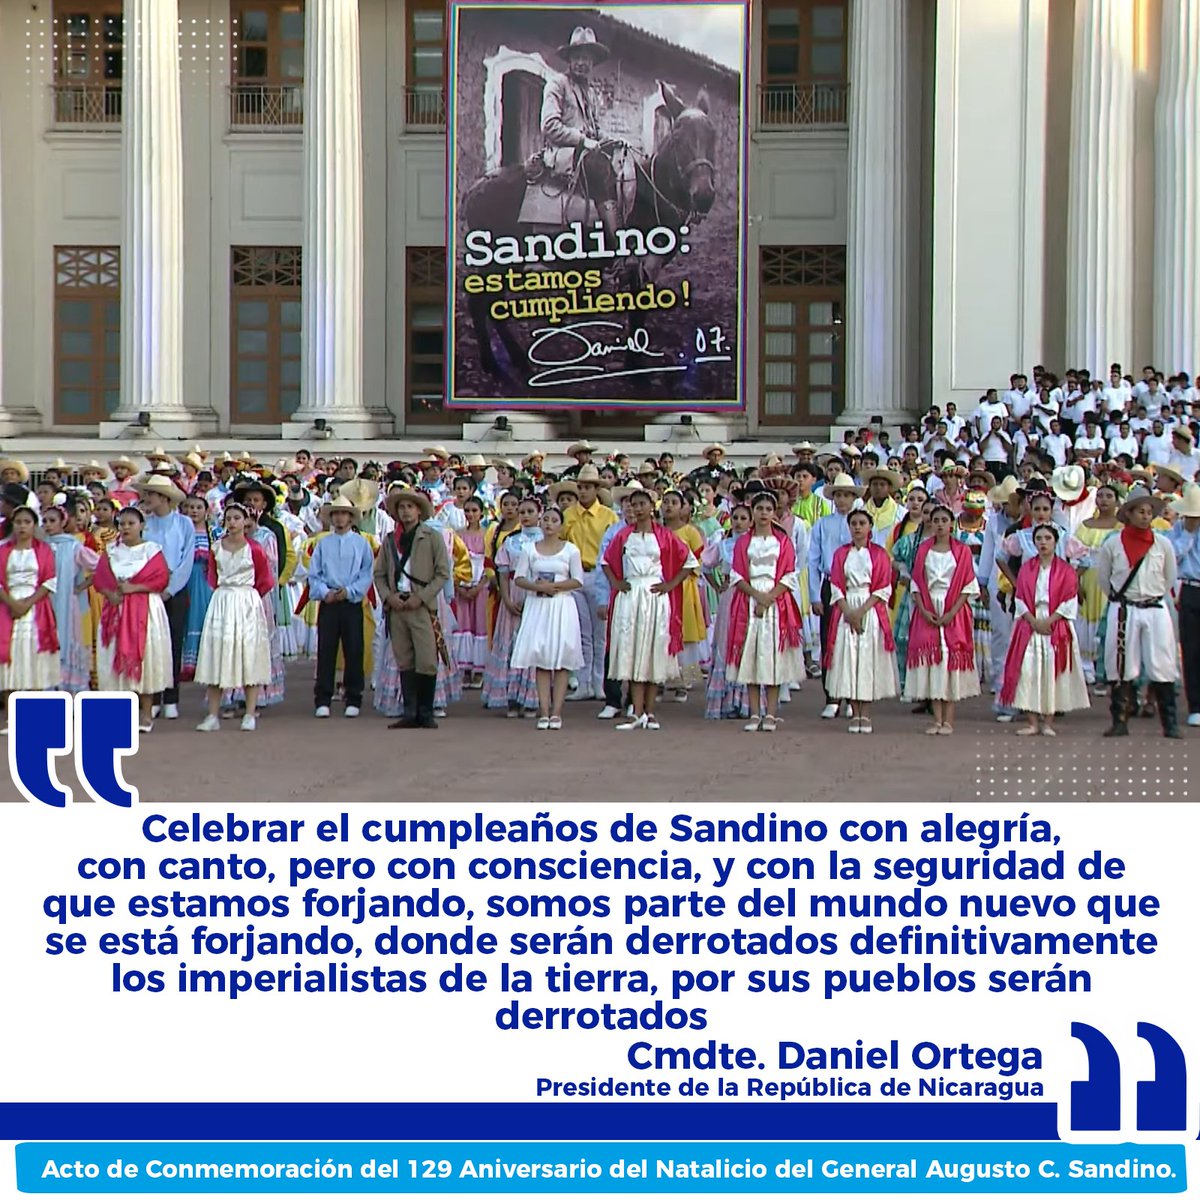 SANDINO Luz Y Verdad... Luchar Y Vencer Es Nuestro Ideal... #Nicaragua #SANDINOPADREYGUÍA #SoberaníaYDignidadNacional #4519LaPatriaLaRevolución #ManaguaSandinista #SomosUNCSM